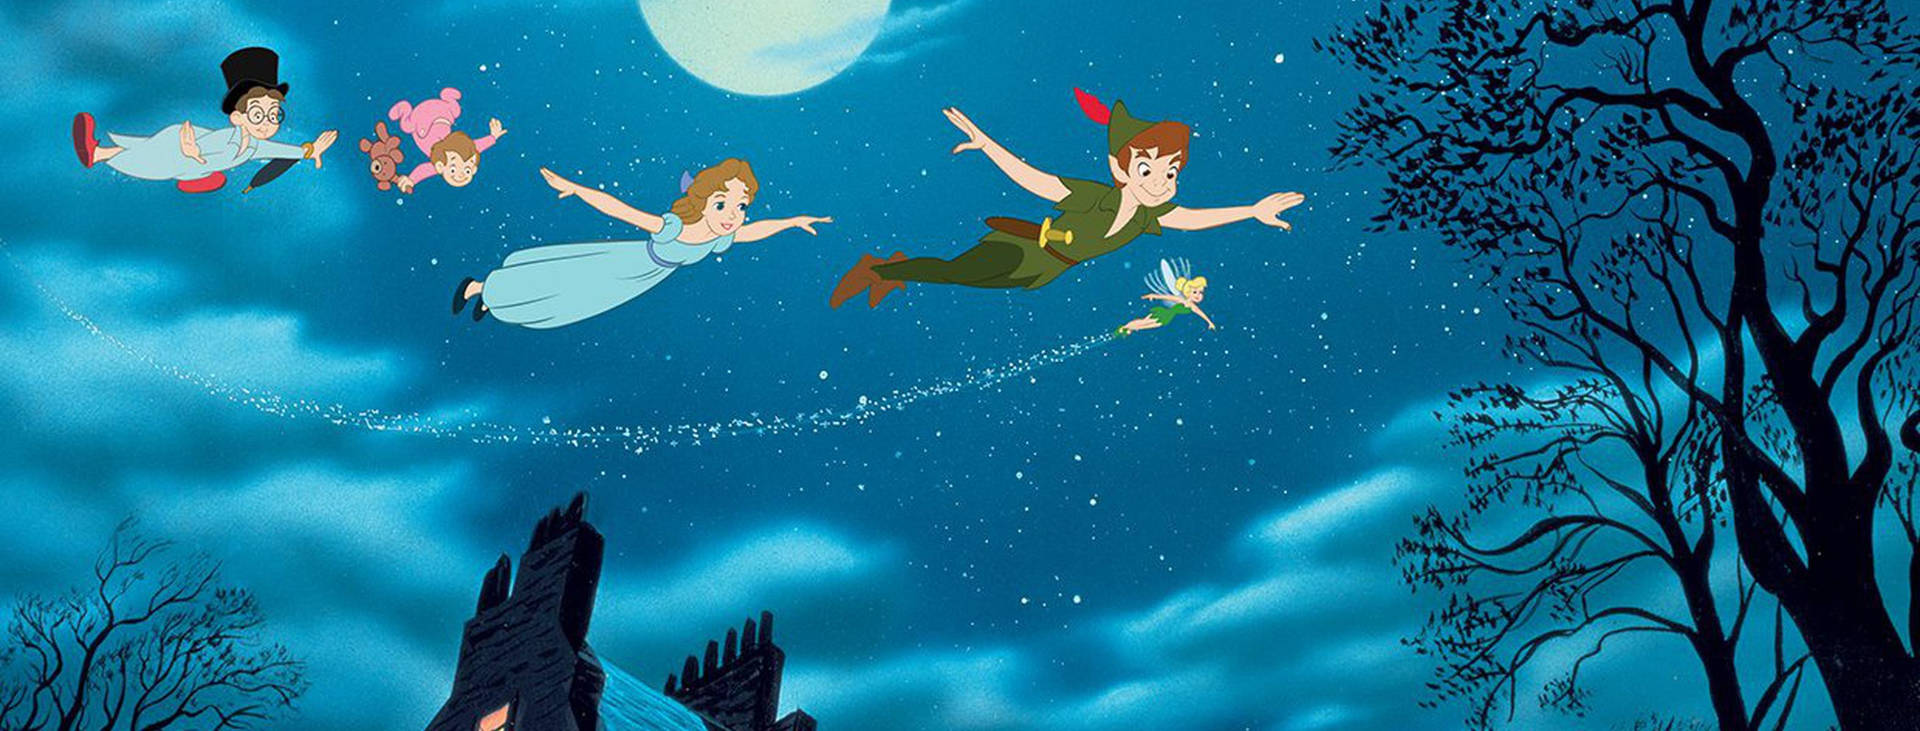 Tinkerbell Mit Peter Pan. Wallpaper